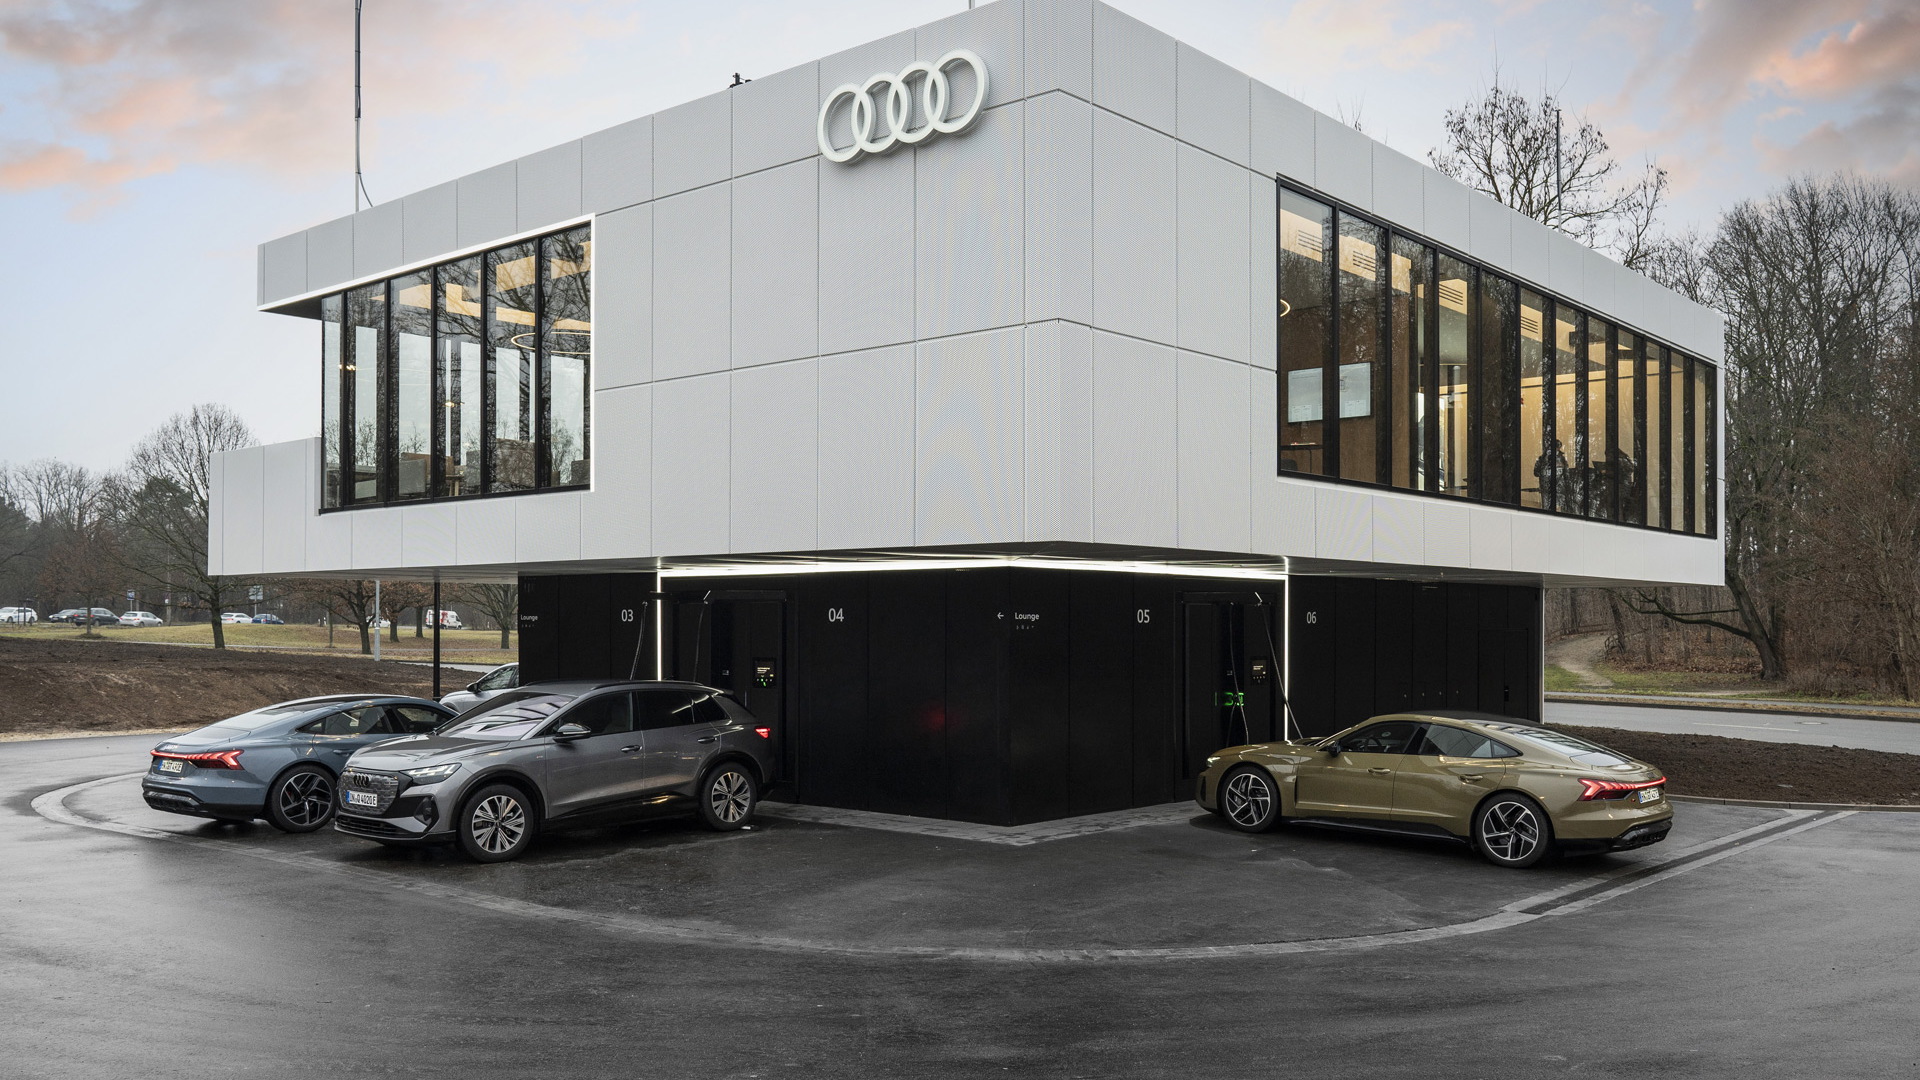 Audi Charging Hub concept in Nuremberg, Germany